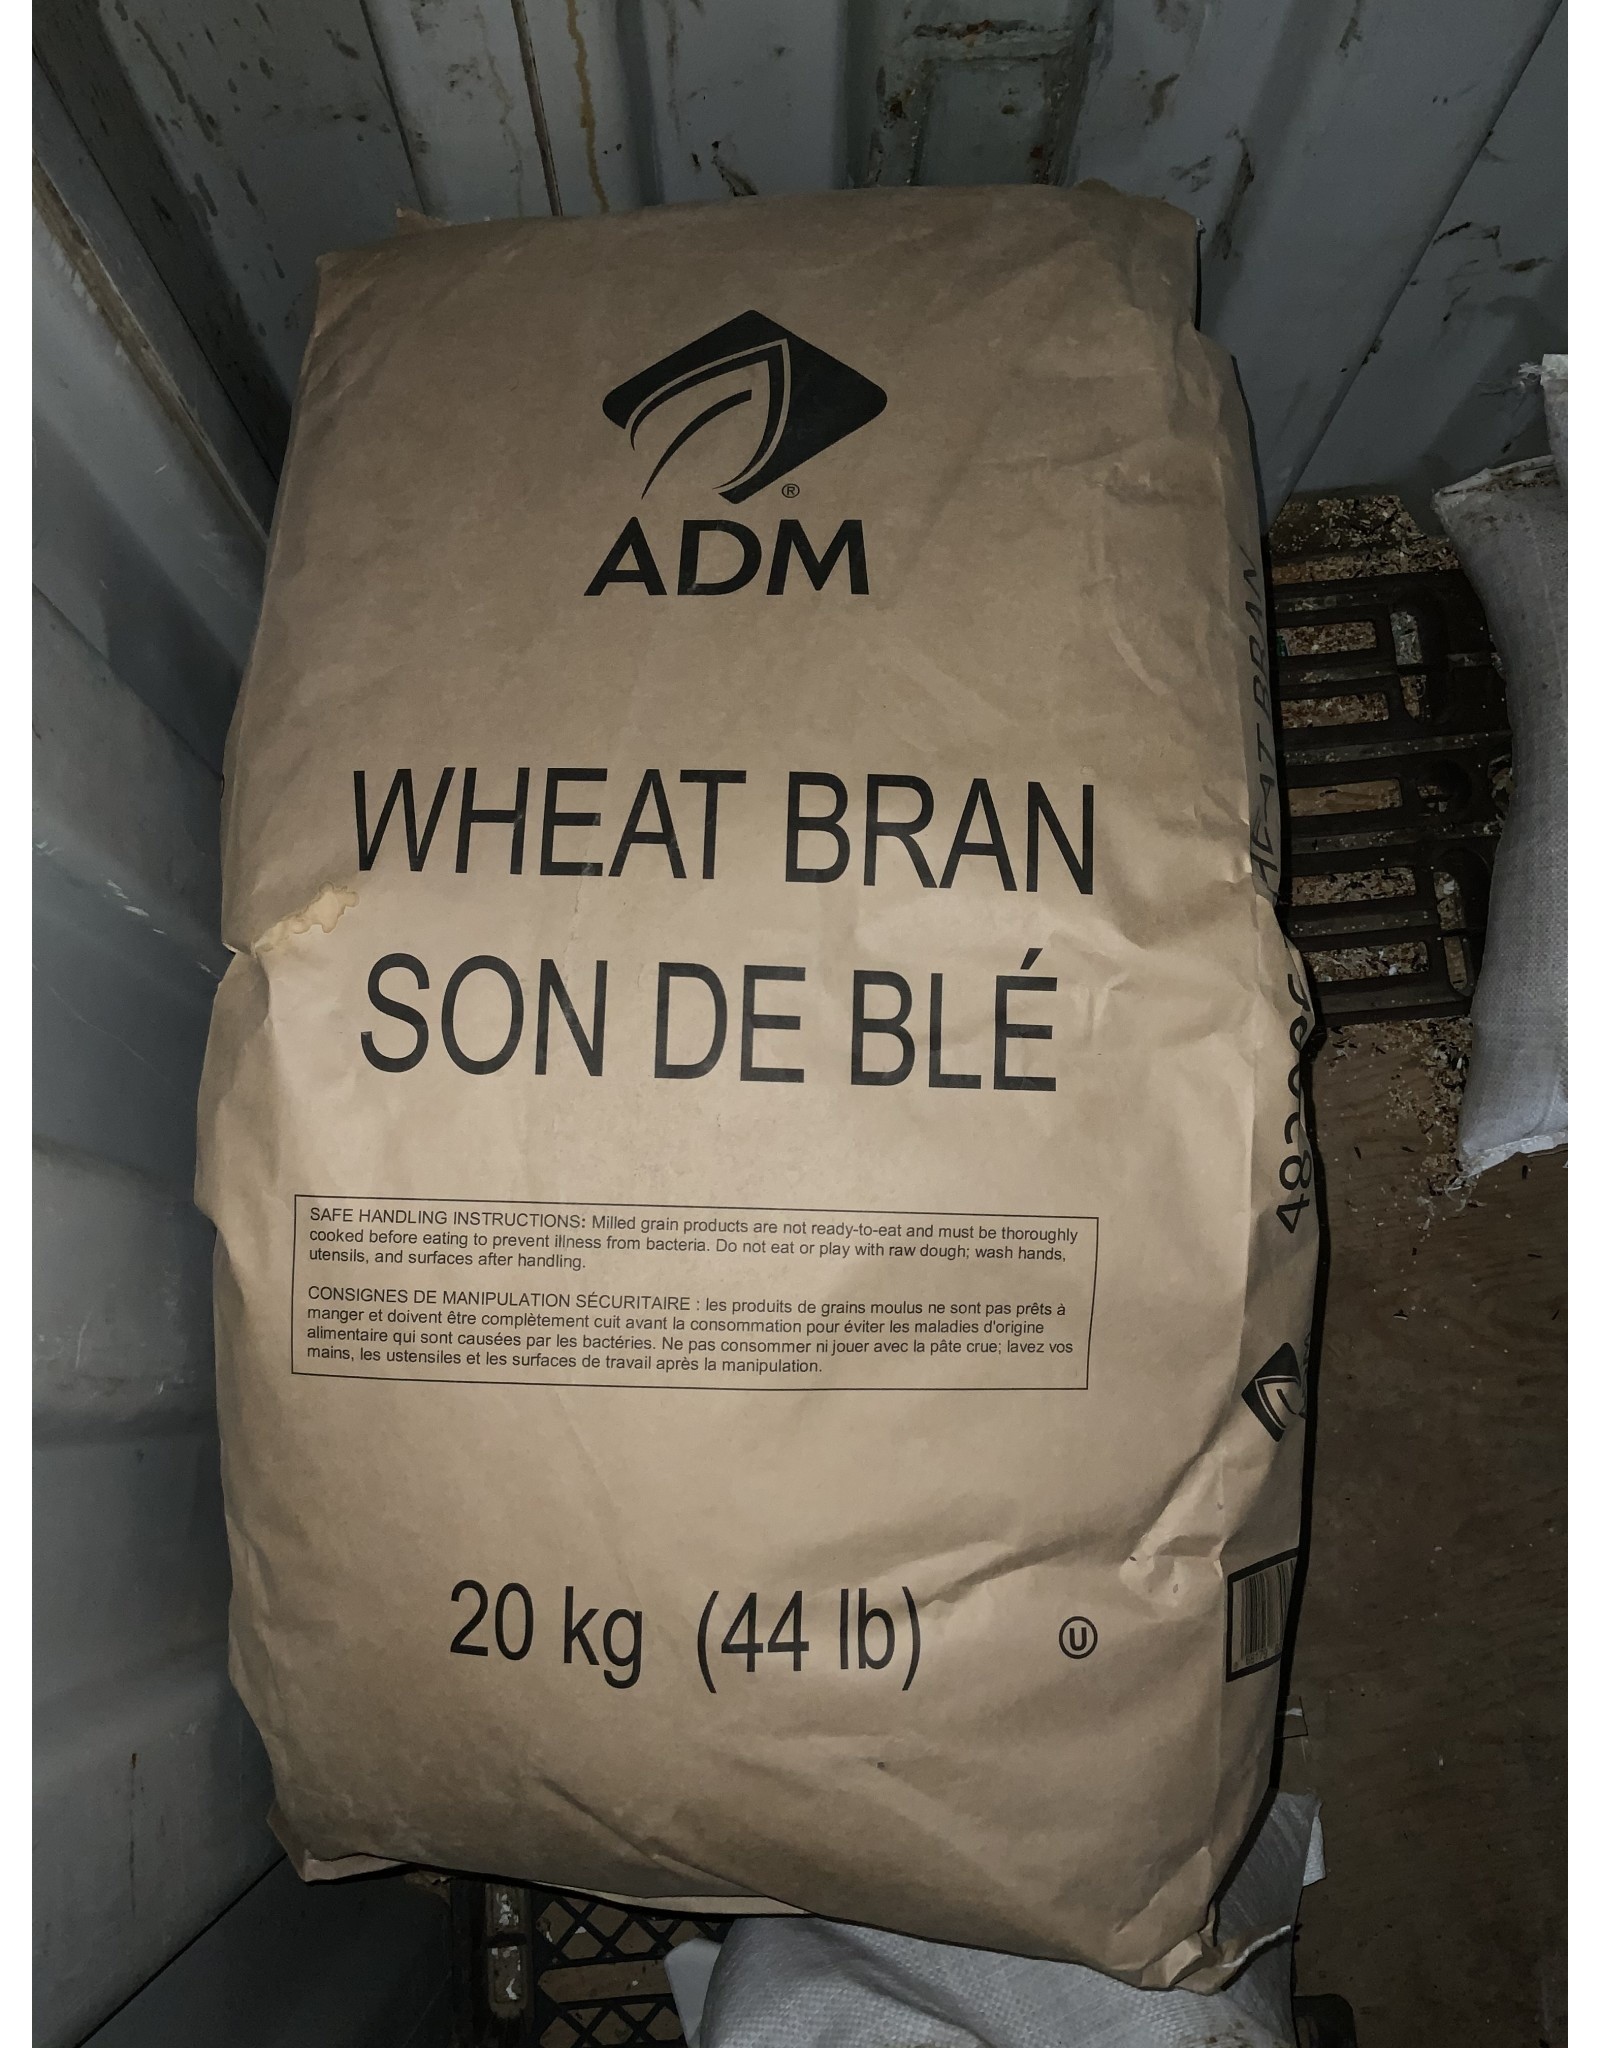 ADM WHEAT BRAN - 20 kg - BRN (C-Can)